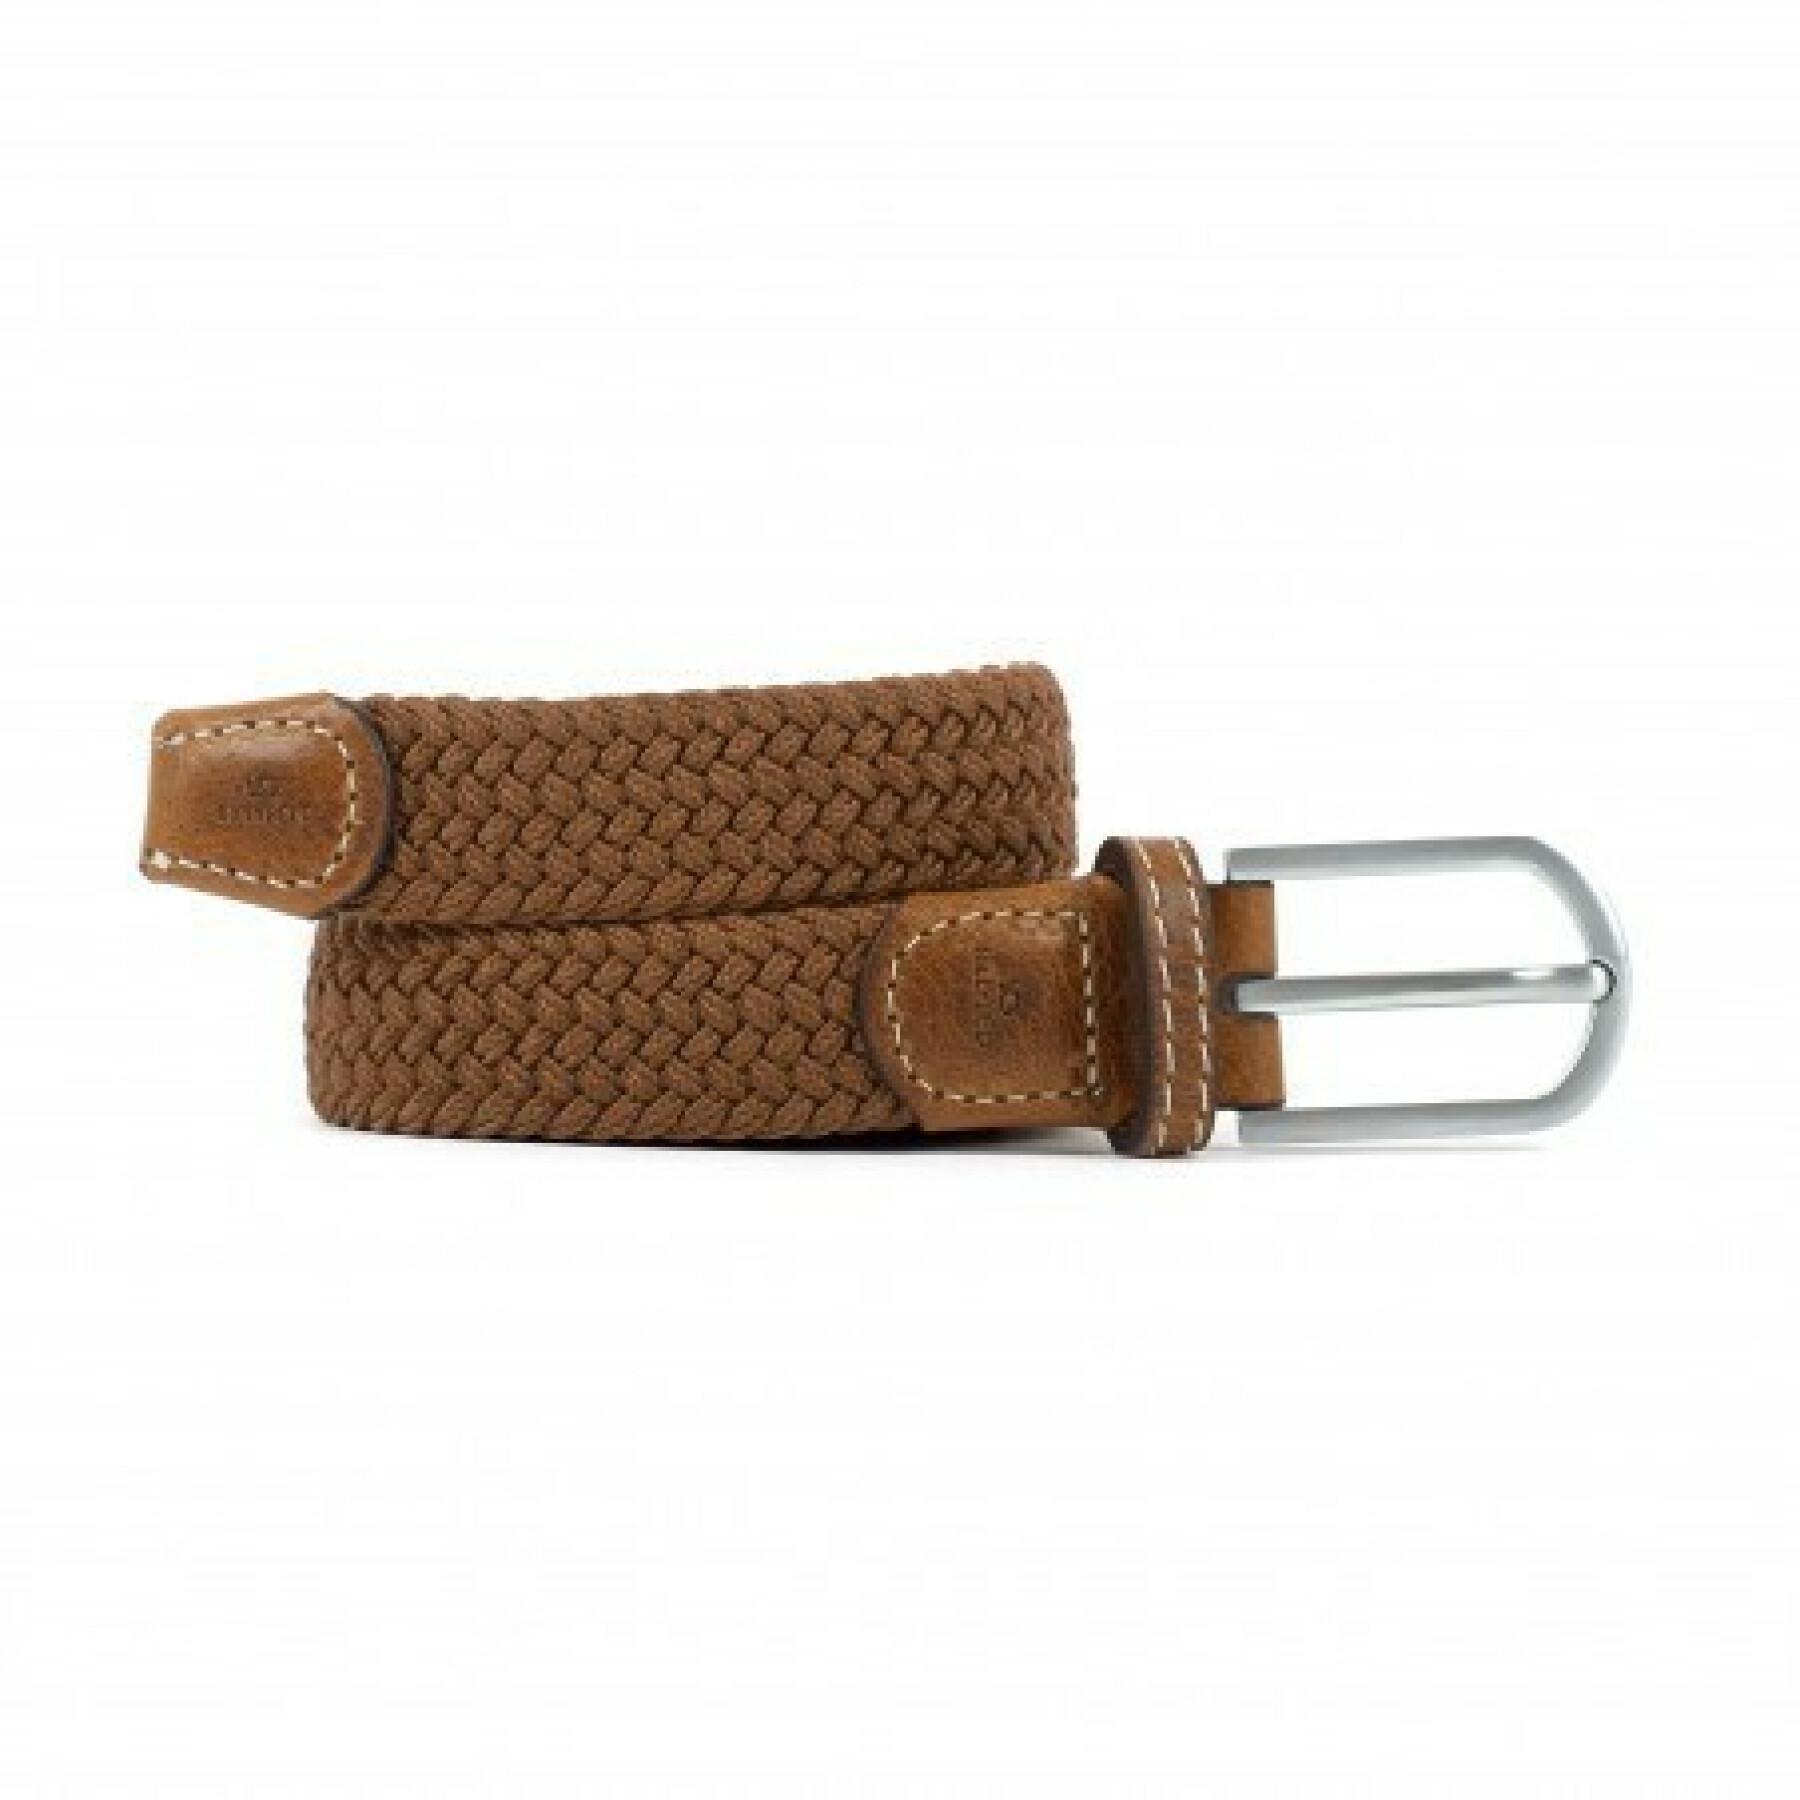 Elastic braided belt for women Billybelt Marron Camel